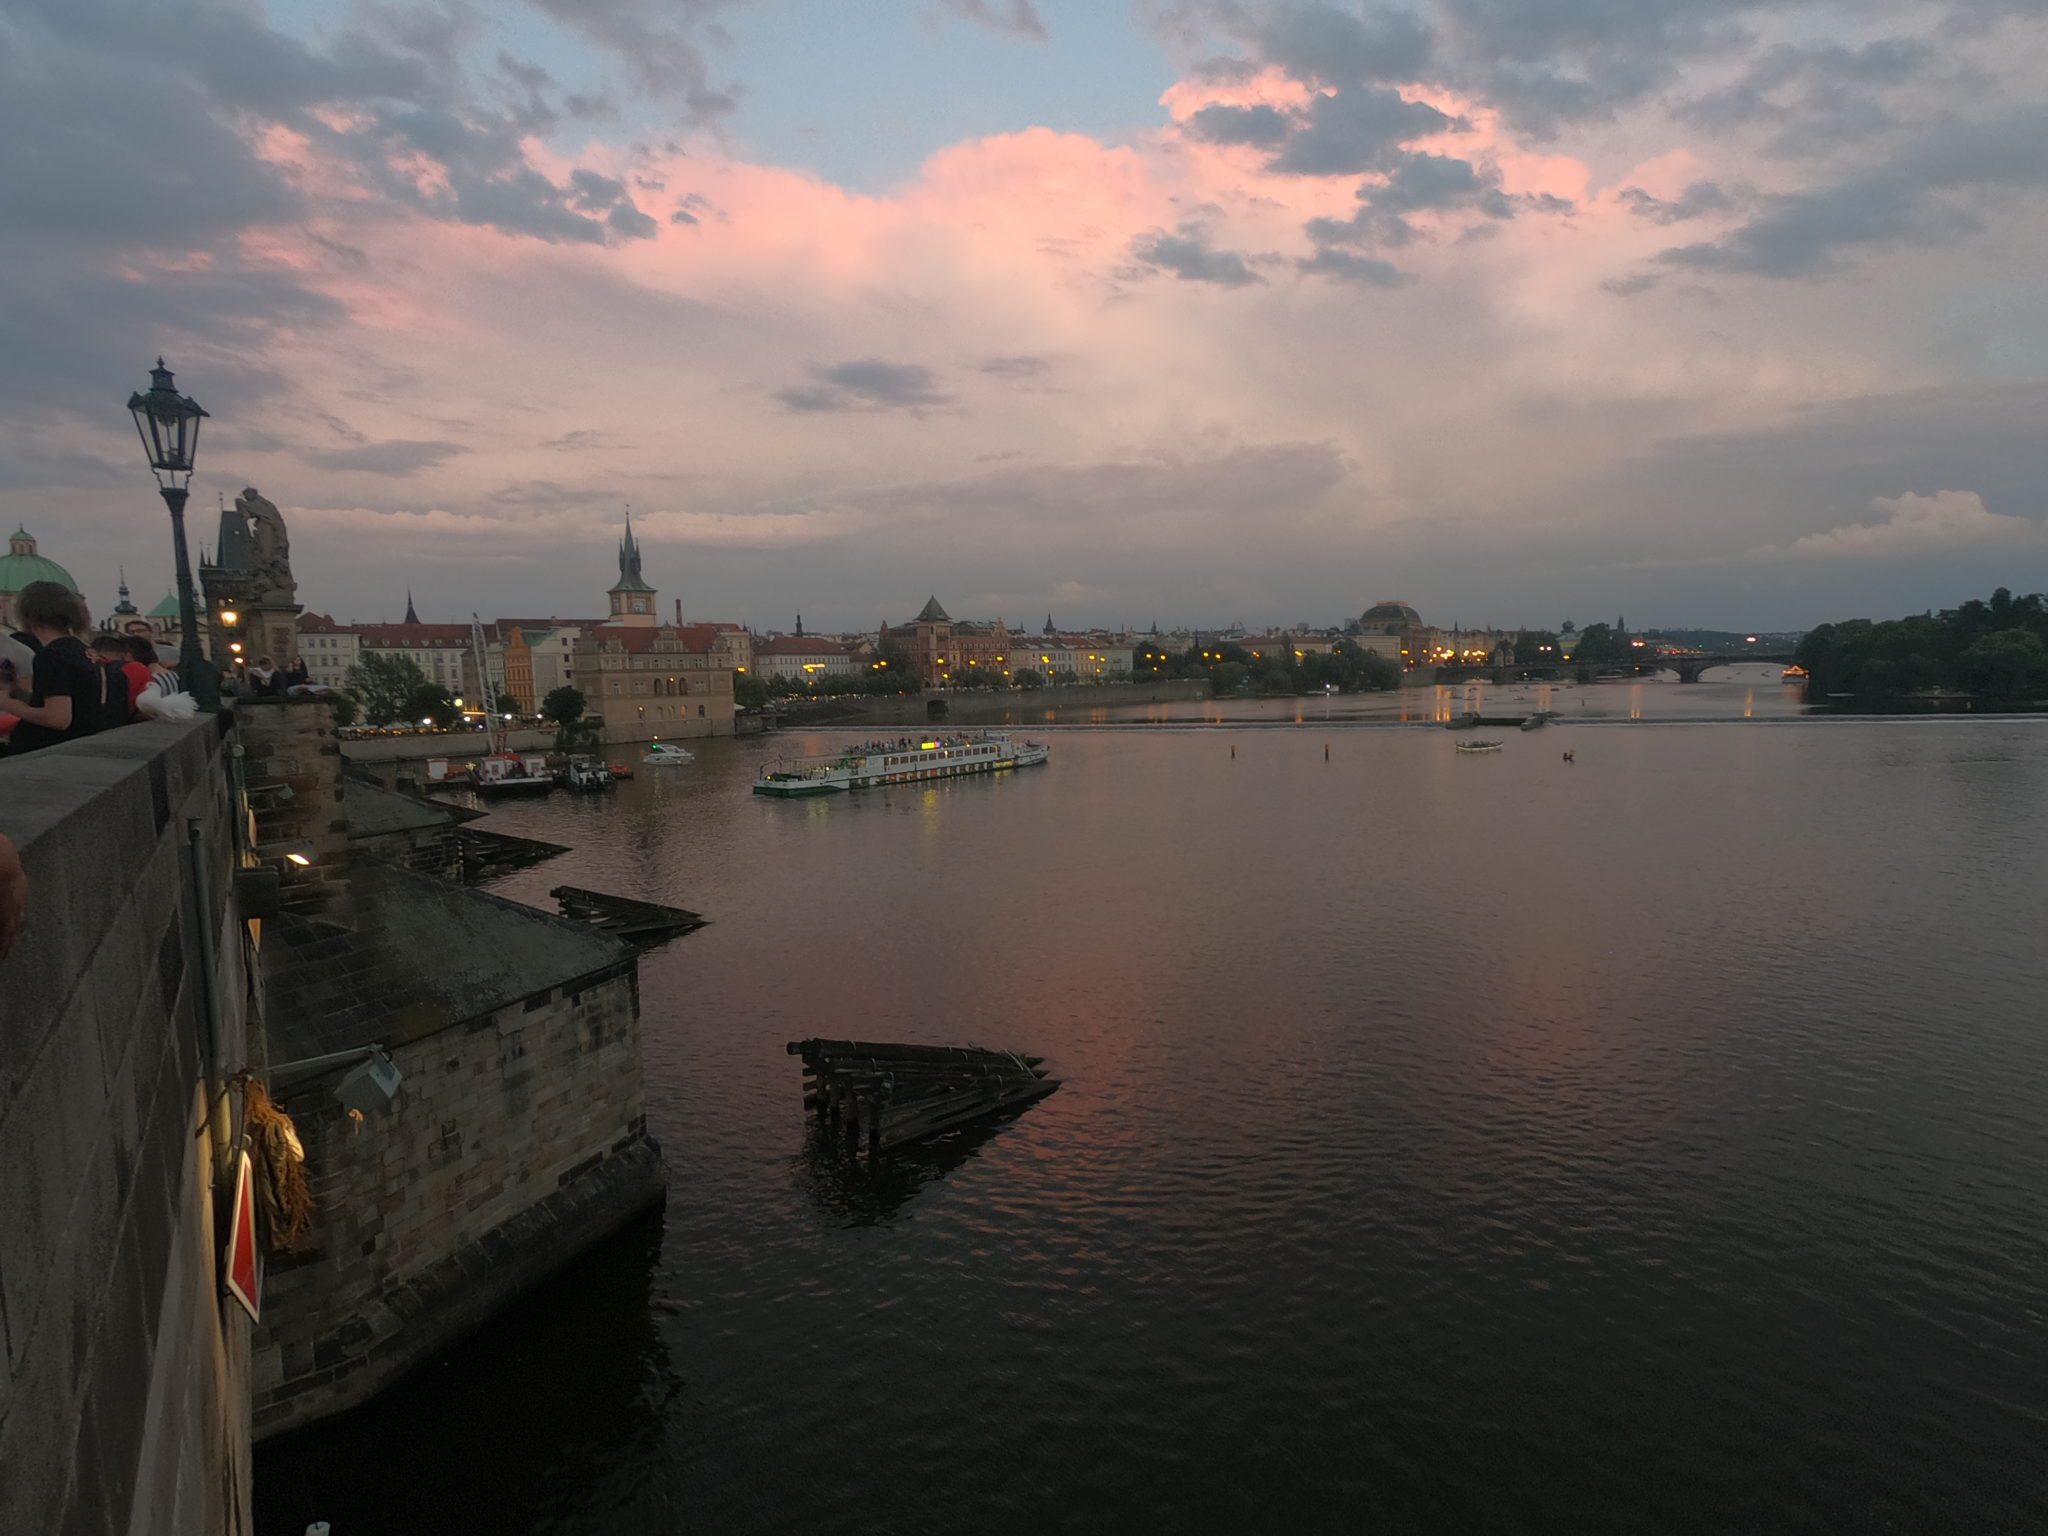  Jurnal de călătorie – Vlogging în Praga cu Go Pro Hero 7 Black Edition